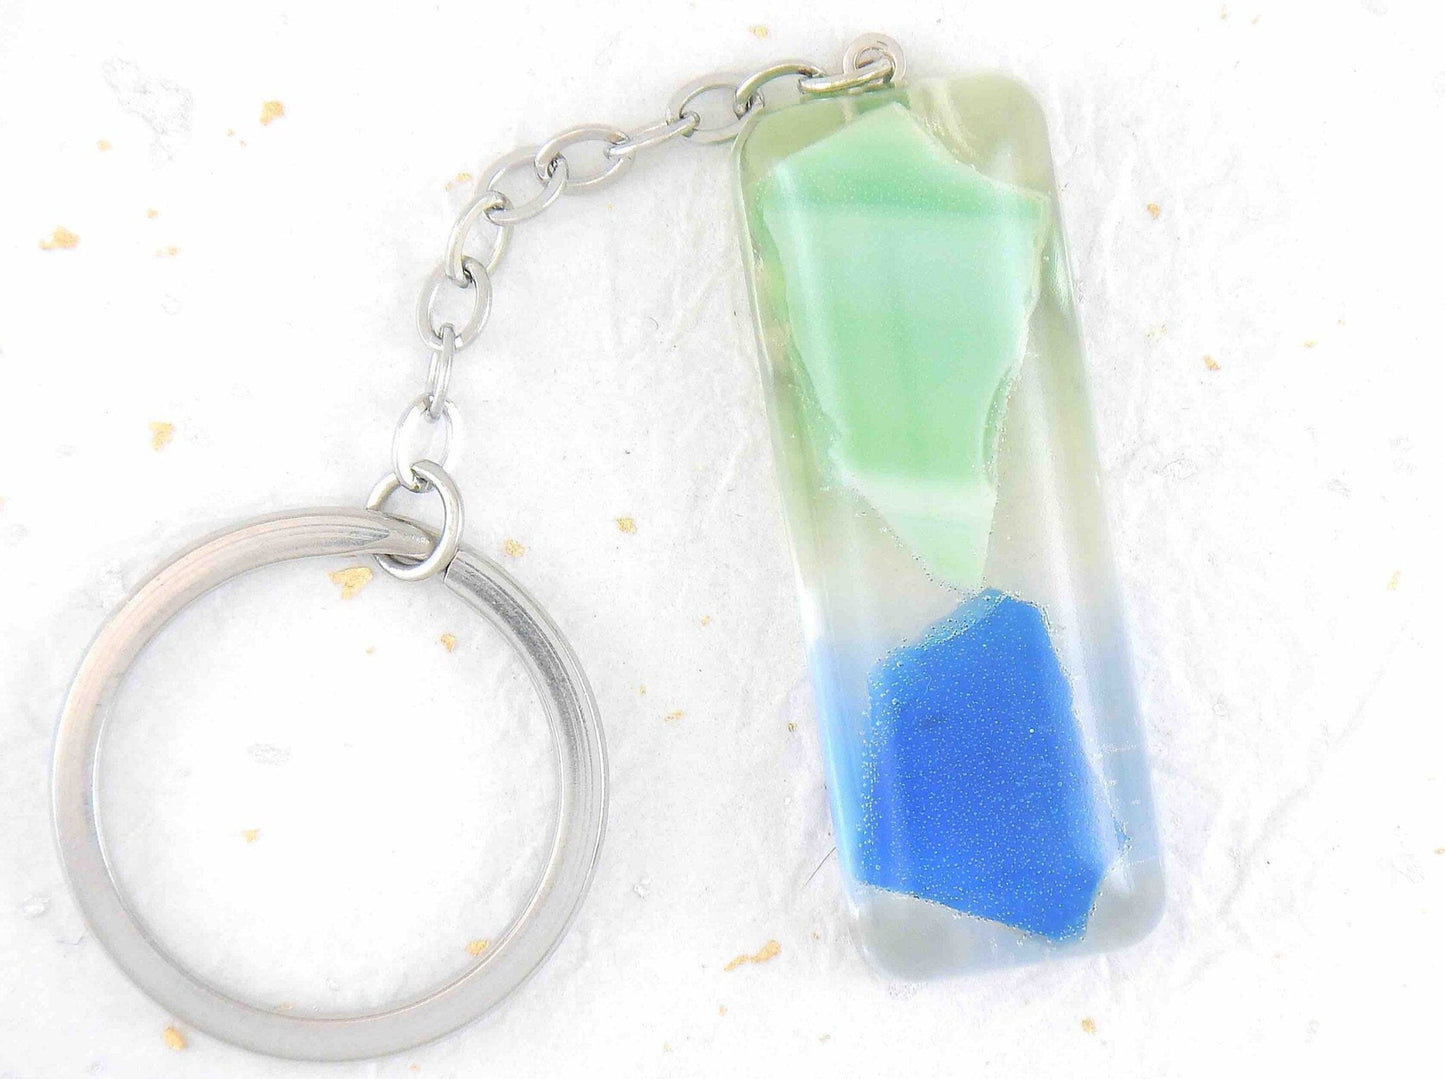 Porte-clés avec long rectangle de résine fait main, inclusions de verre bleu et vert, chaîne acier inoxydable